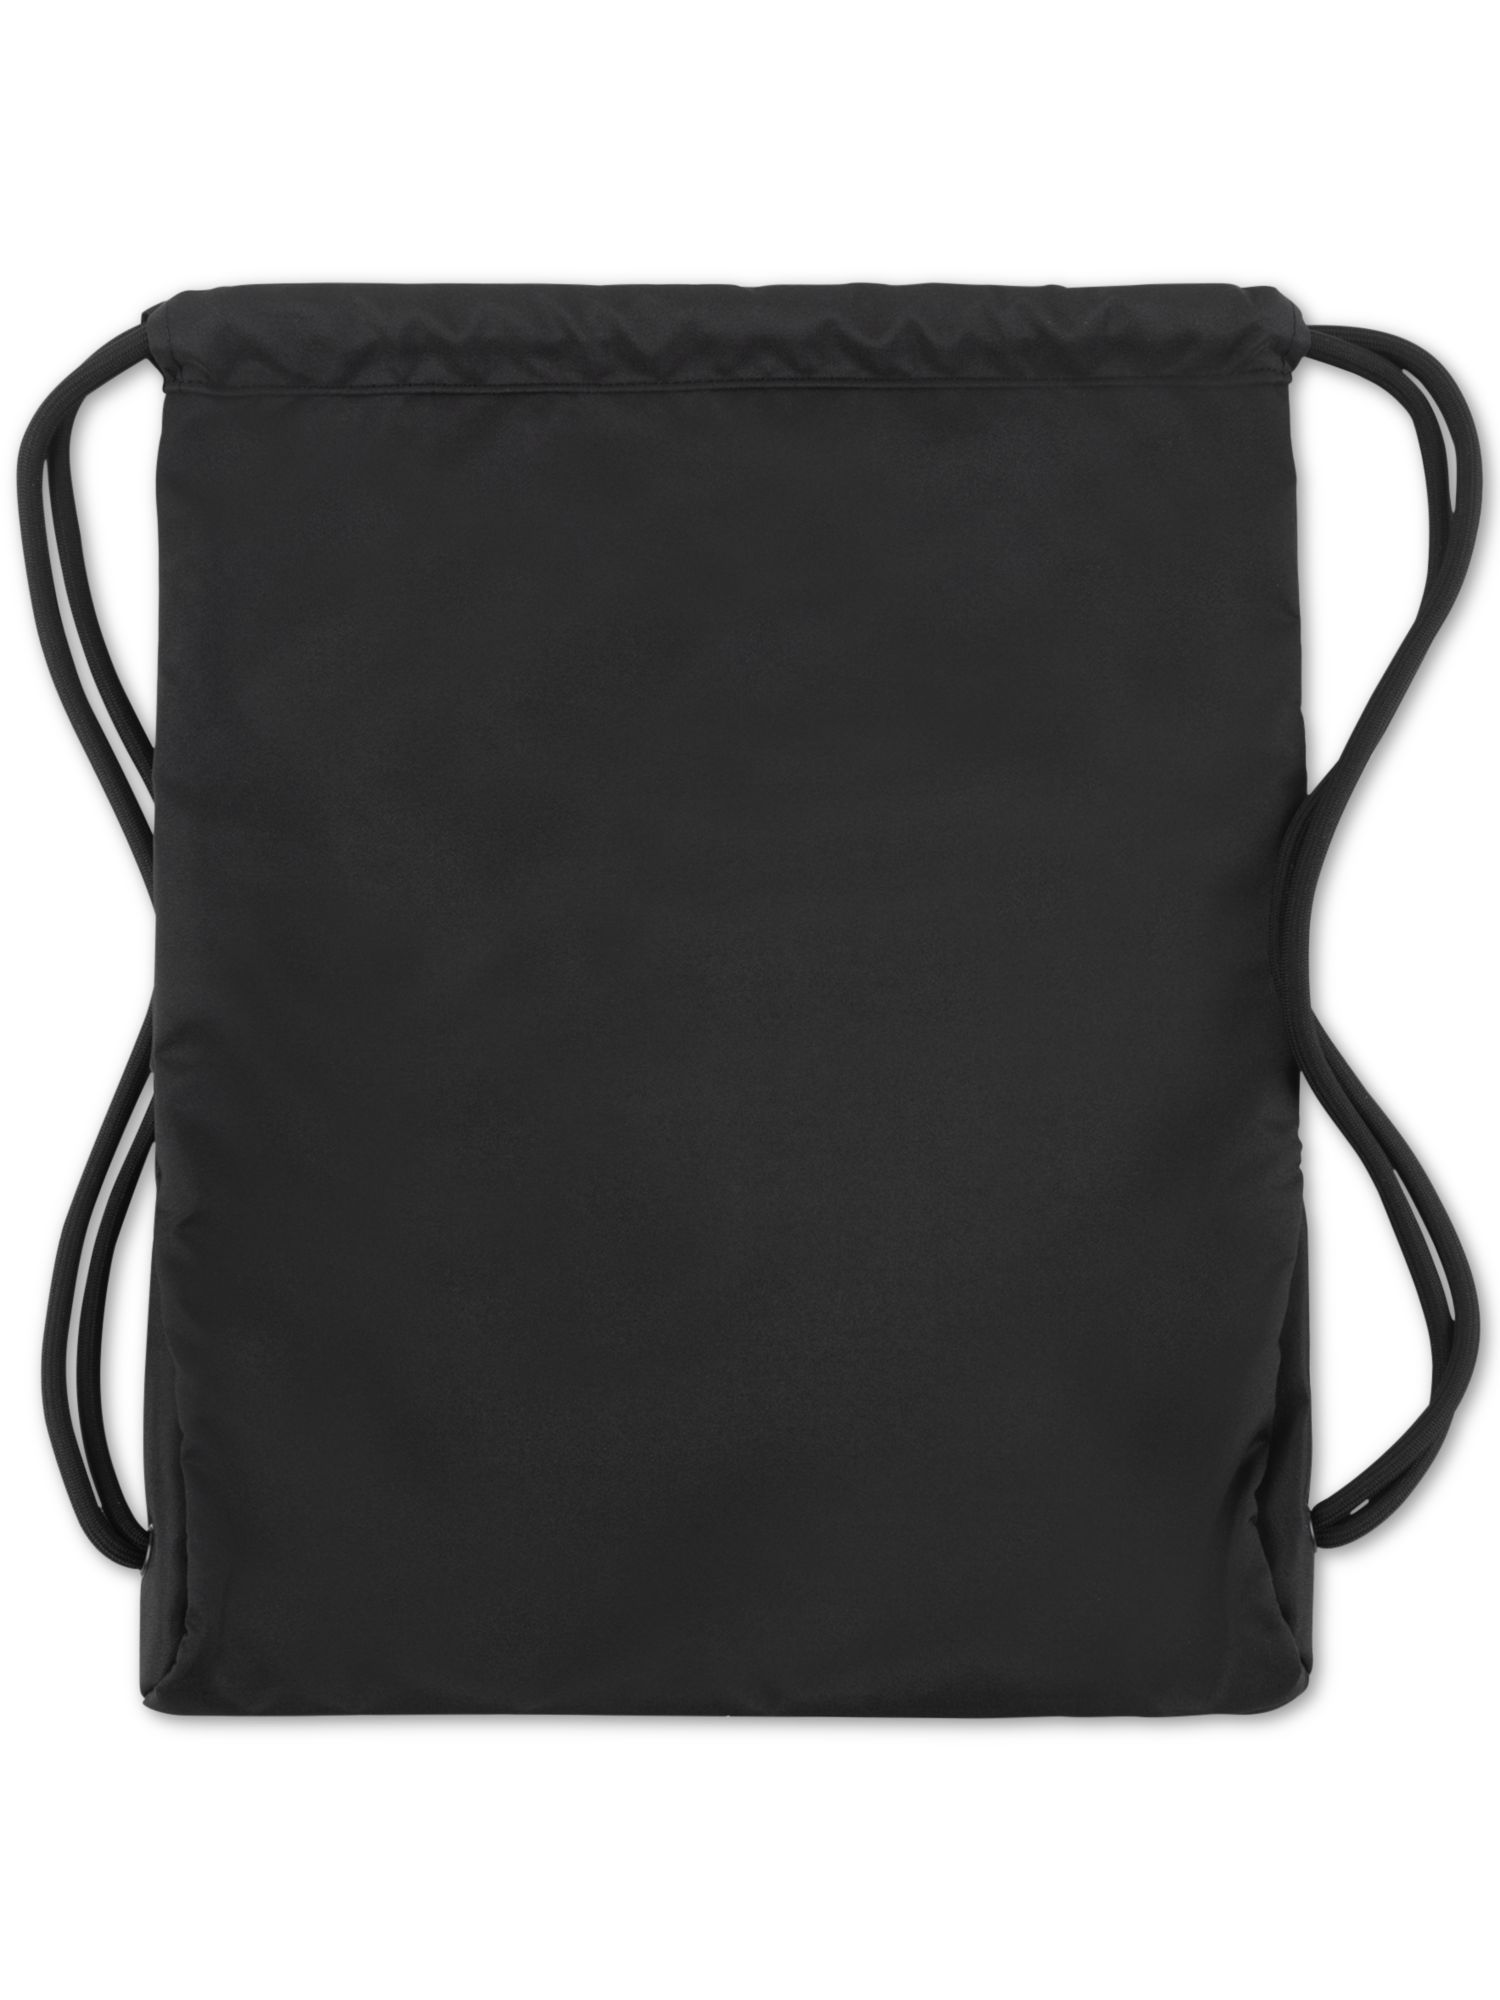 CHAMPION Men's Black Logo Canvas Carrysack Adjustable Strap Backpack